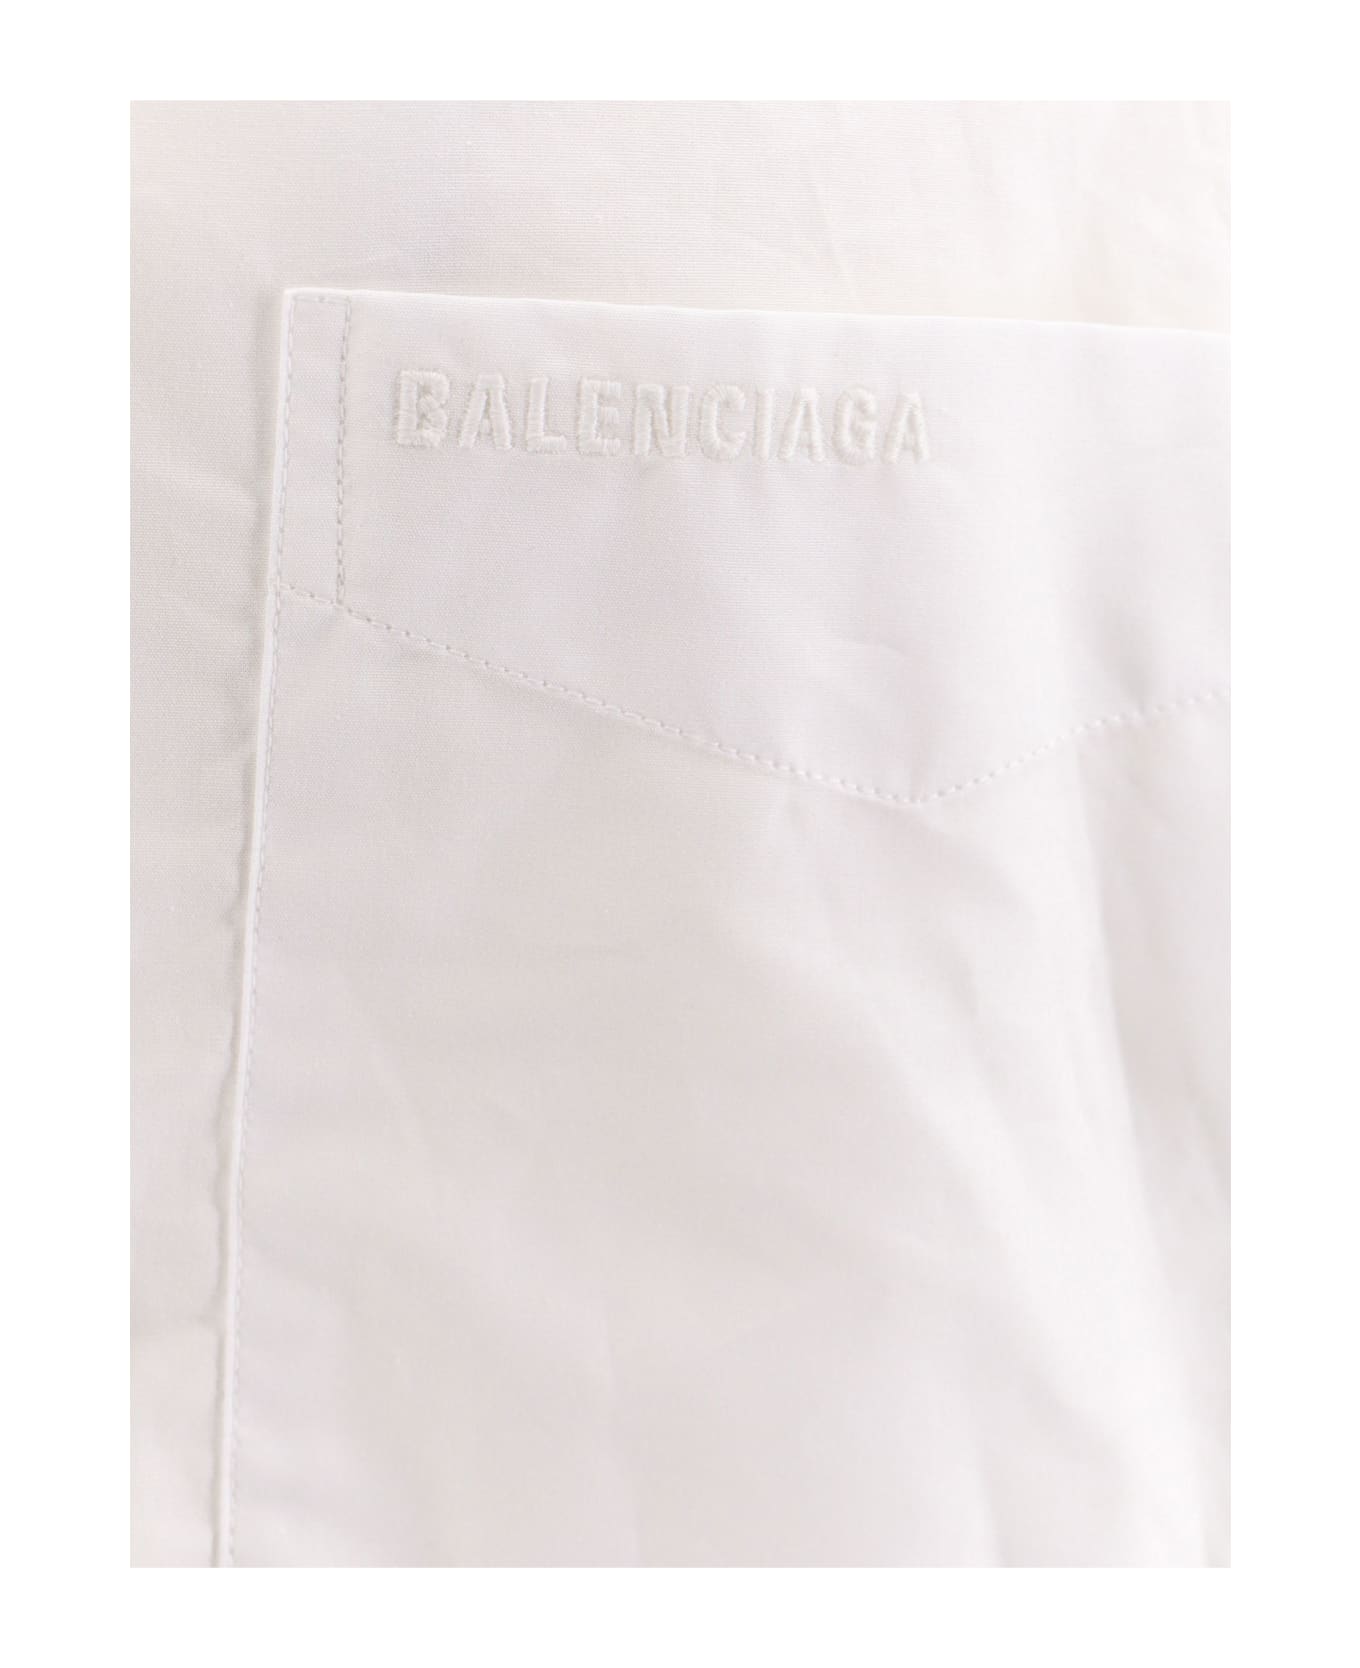 Balenciaga Wrap Shirt - White